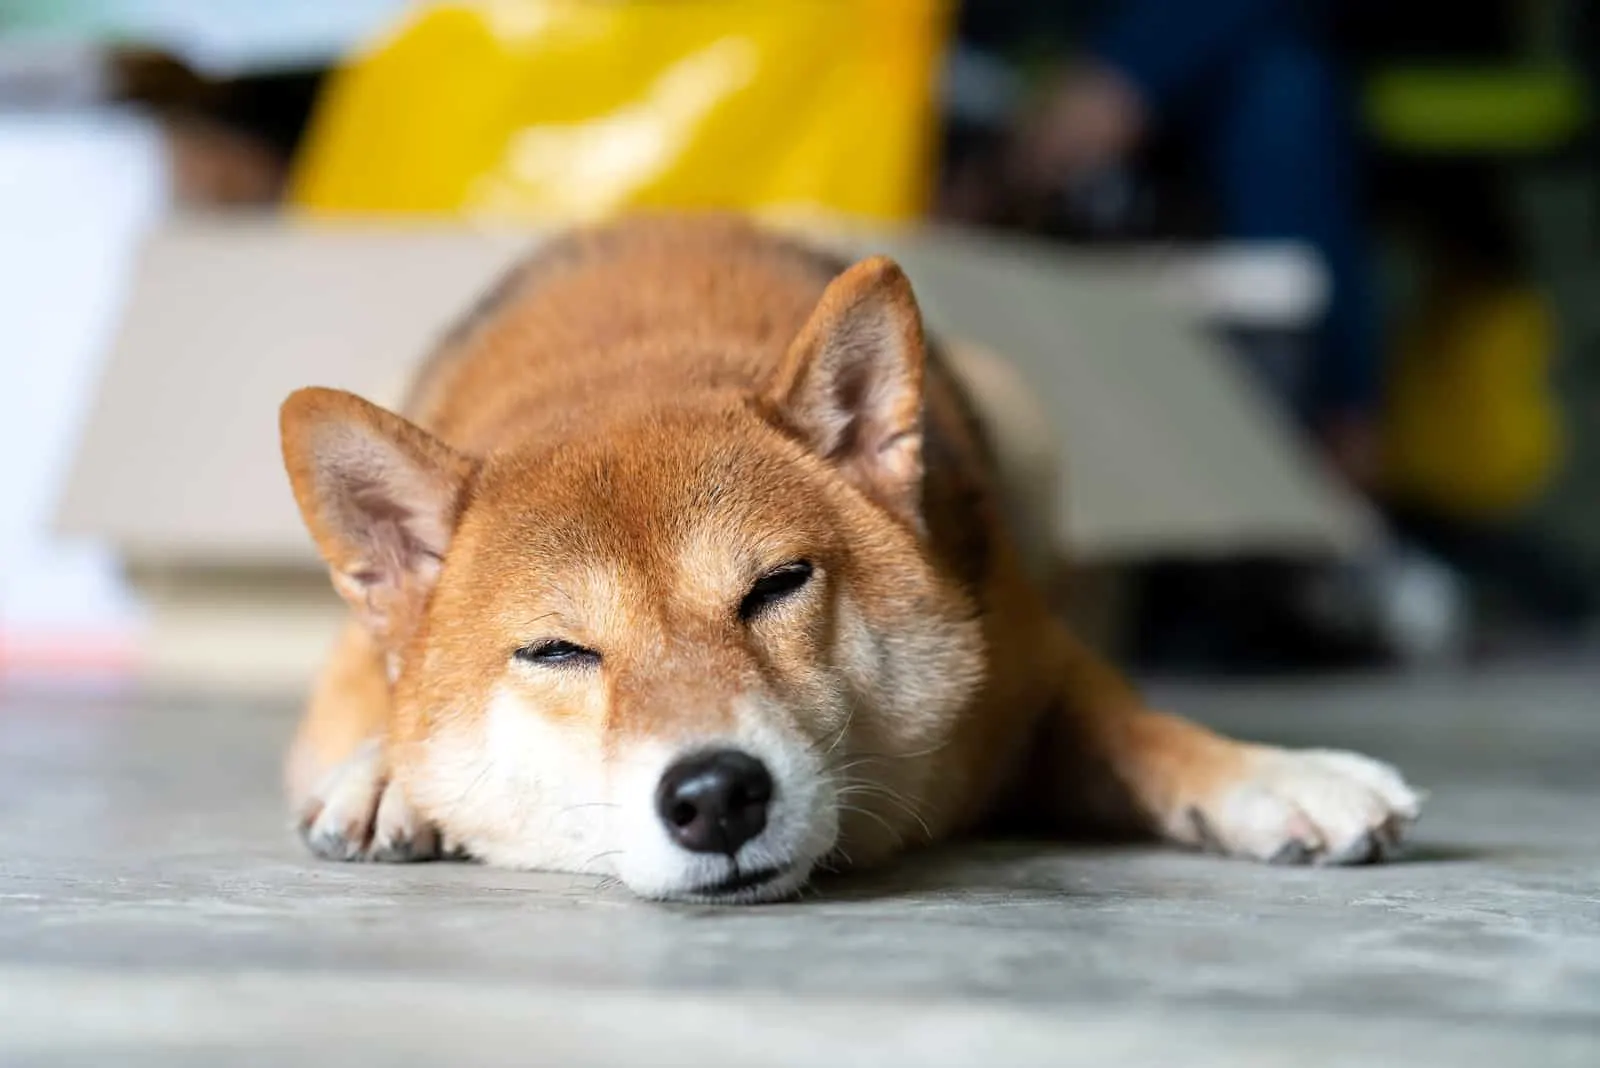 Shiba Inu dog sleeping in room